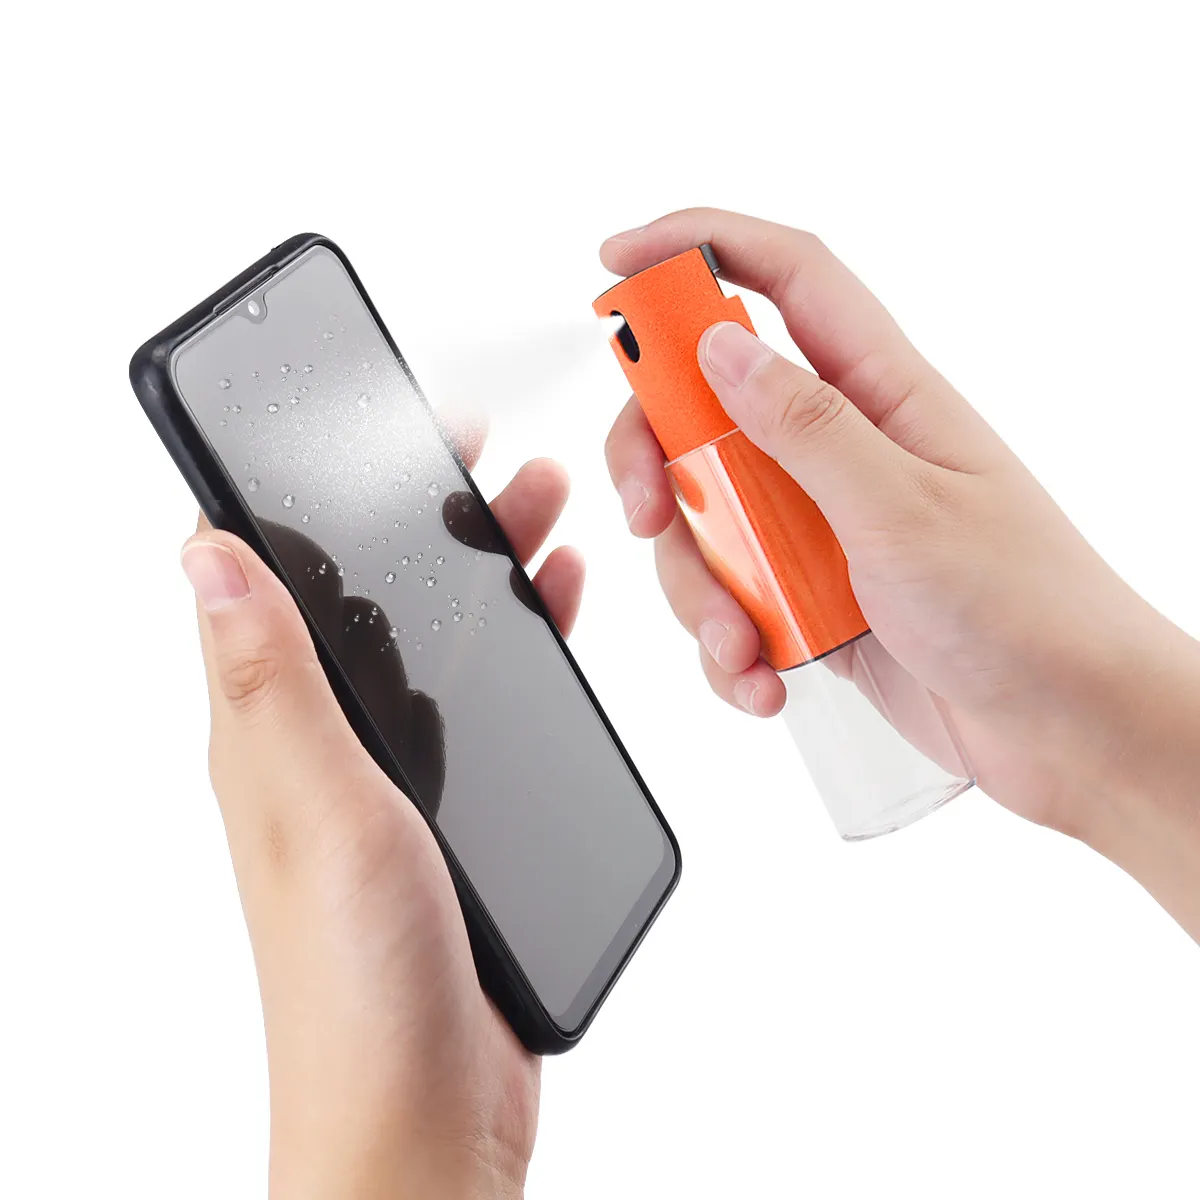 2-in-1 umweltfreundlicher wiederverwendbarer Bildschirmreiniger presse nebel Telefonbildschirmreiniger mit Mikrofasertuch Anti-Staub-Reinigungsset